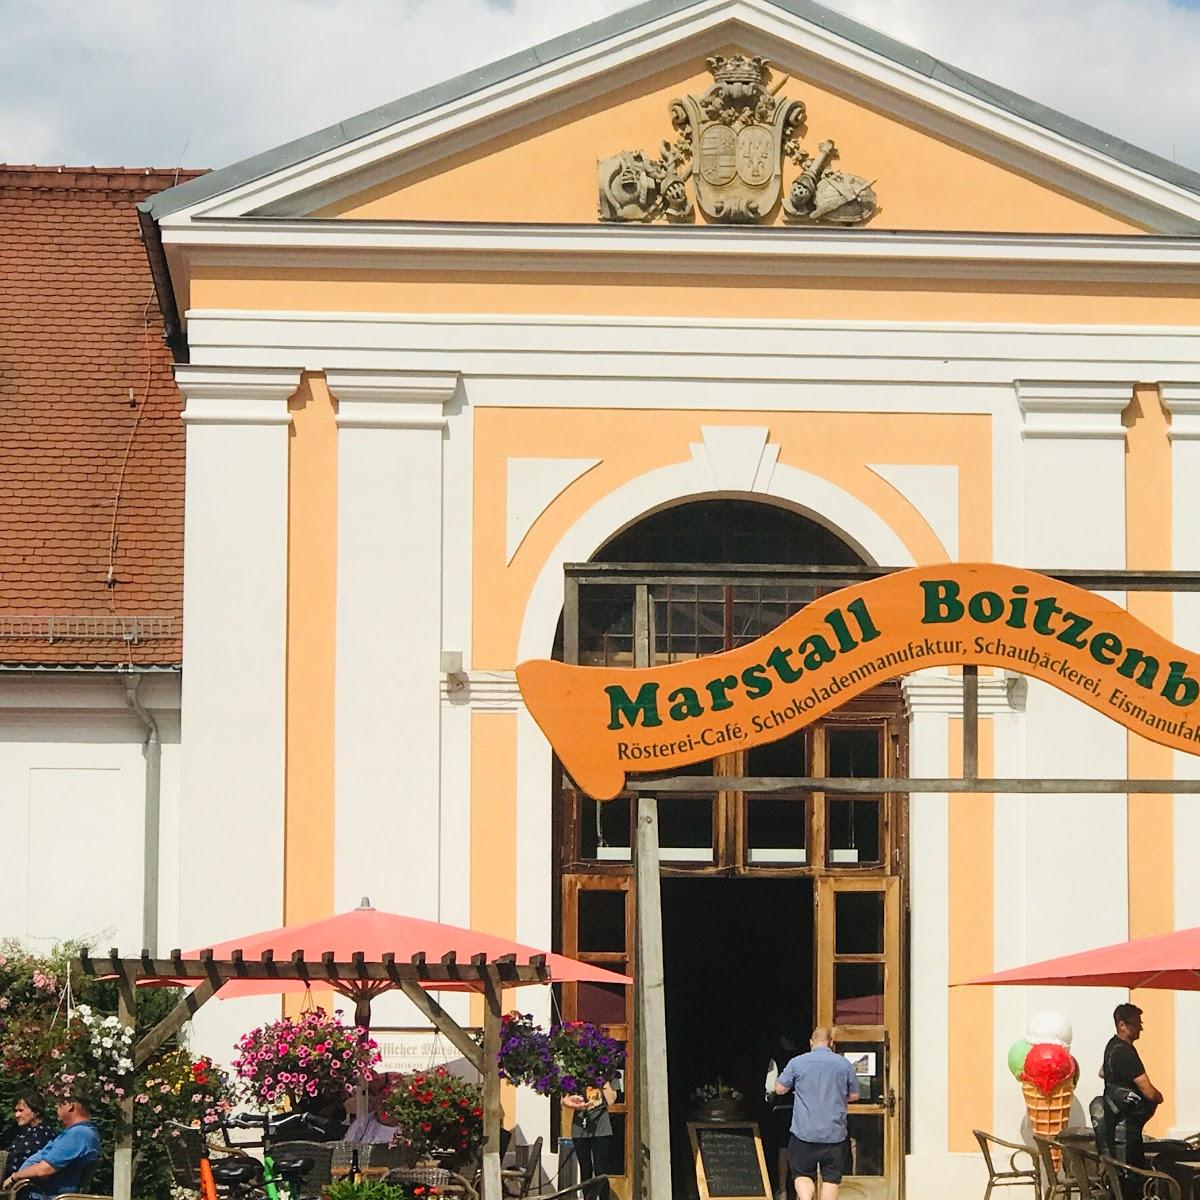 Restaurant "Brauhaus und Braumanufaktur Boitzenburg" in Boitzenburger Land